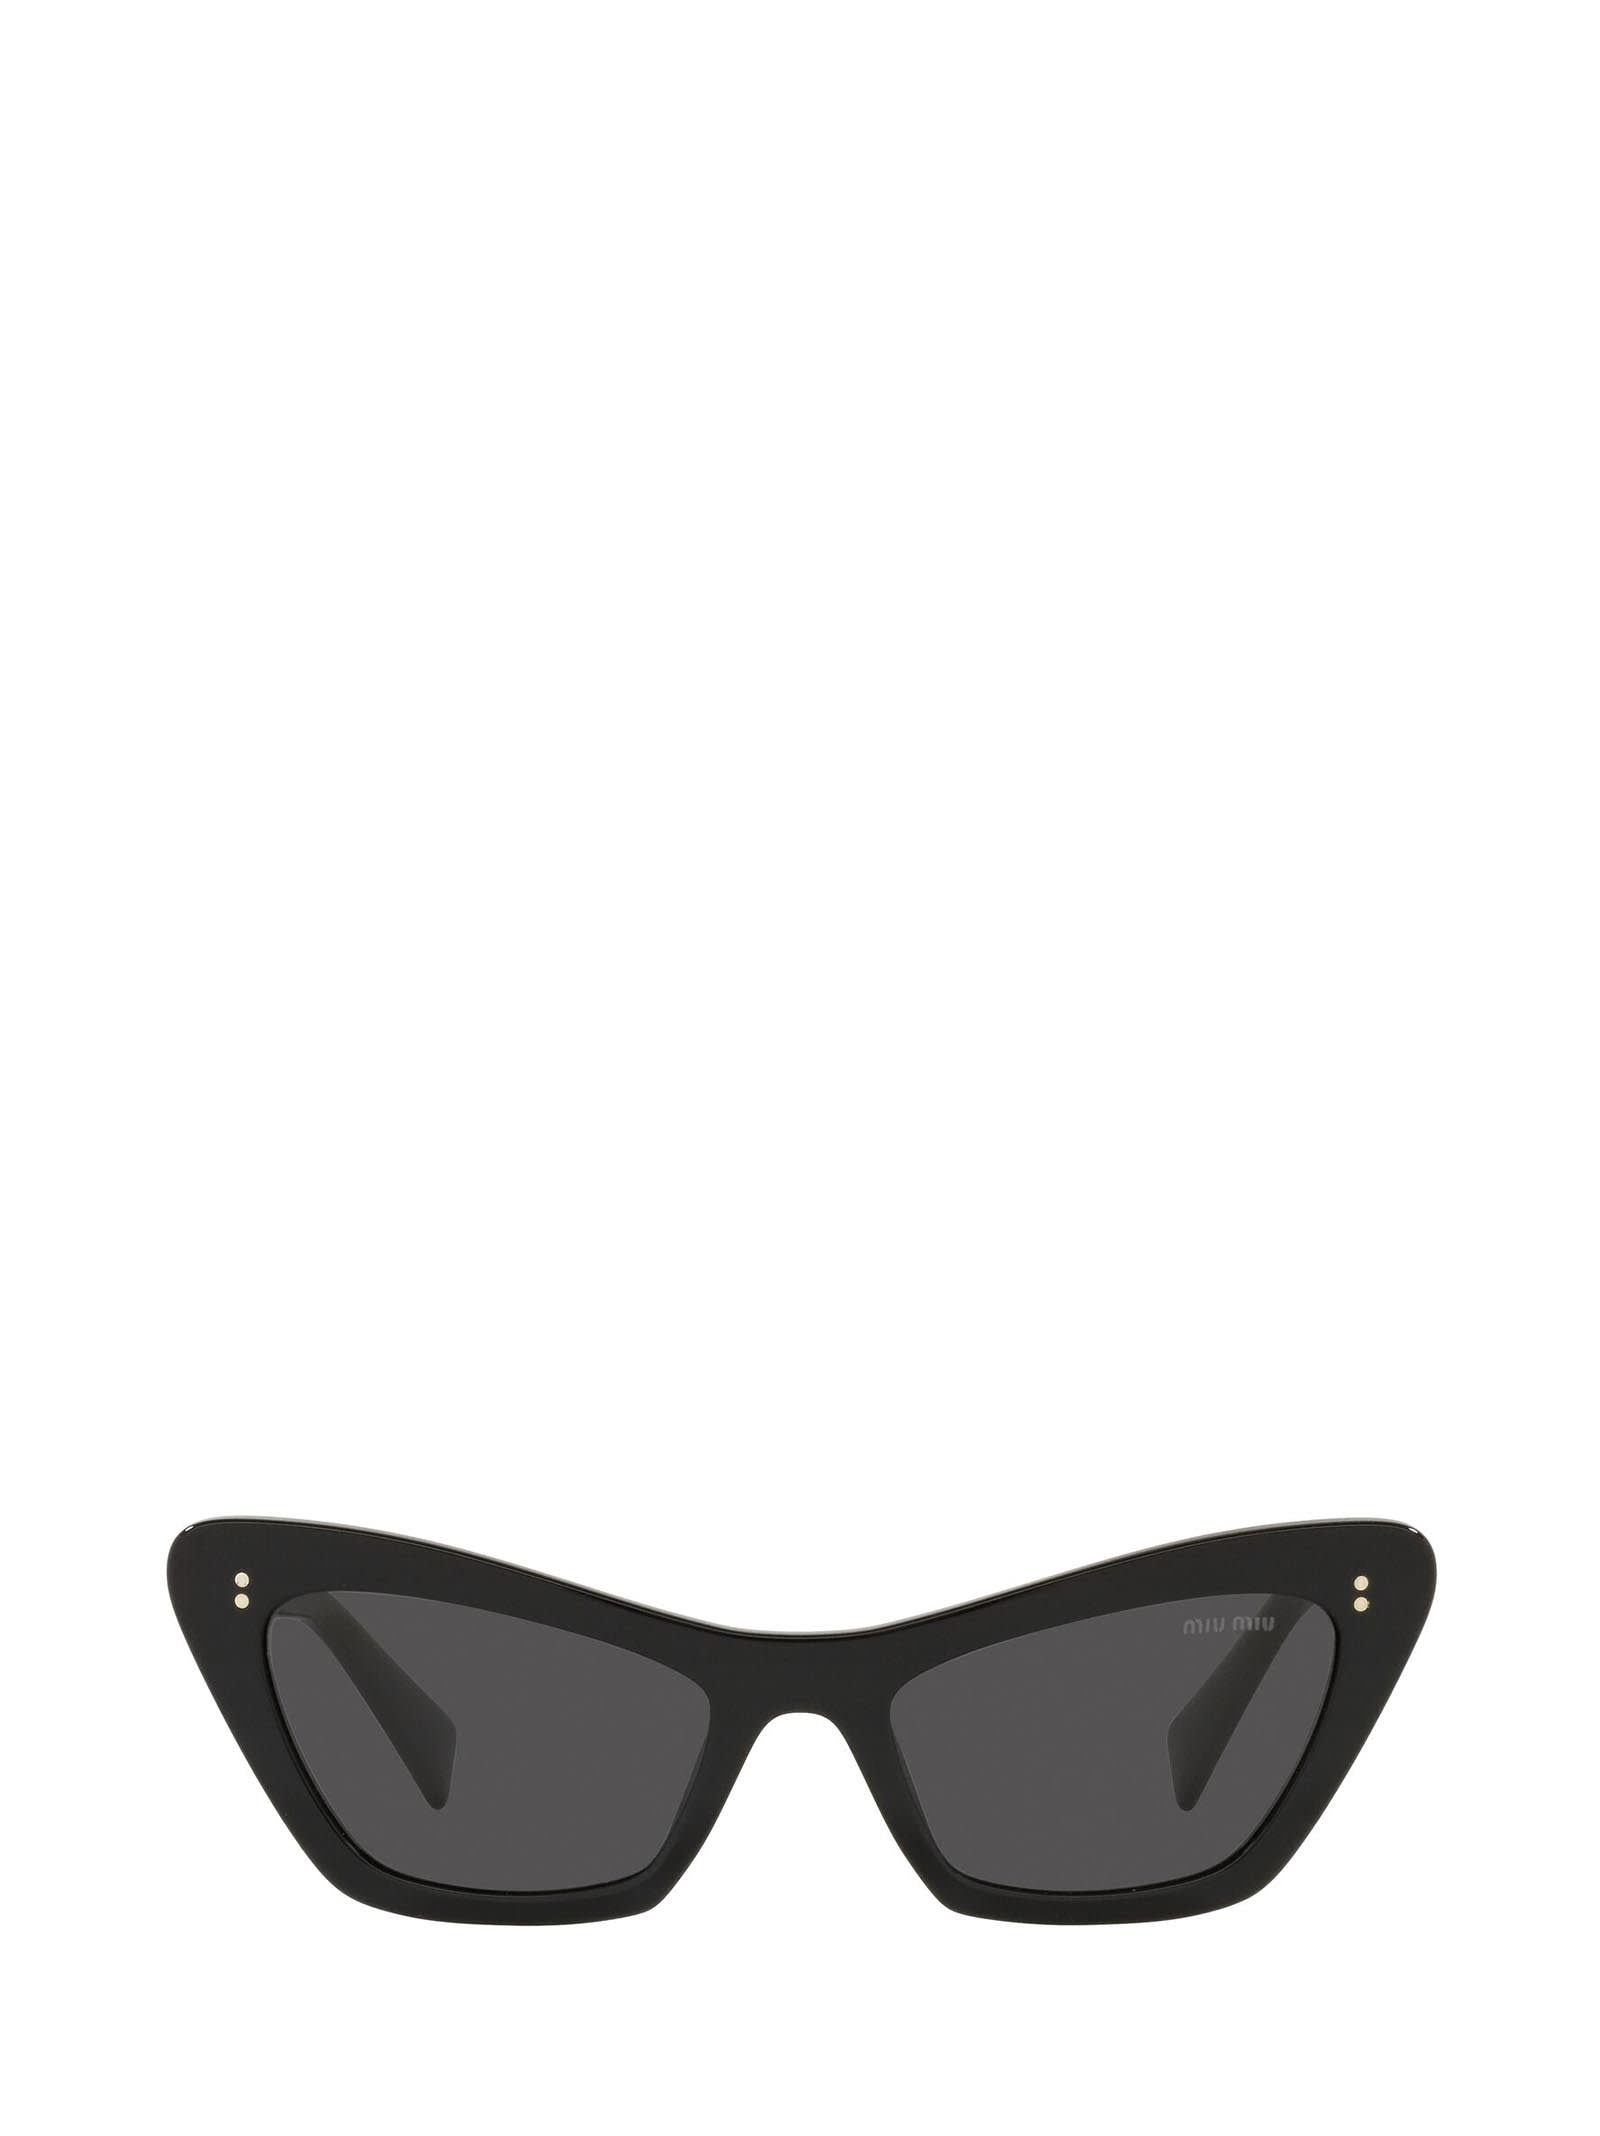 Miu Miu Miu Miu Mu 03xs Black Sunglasses